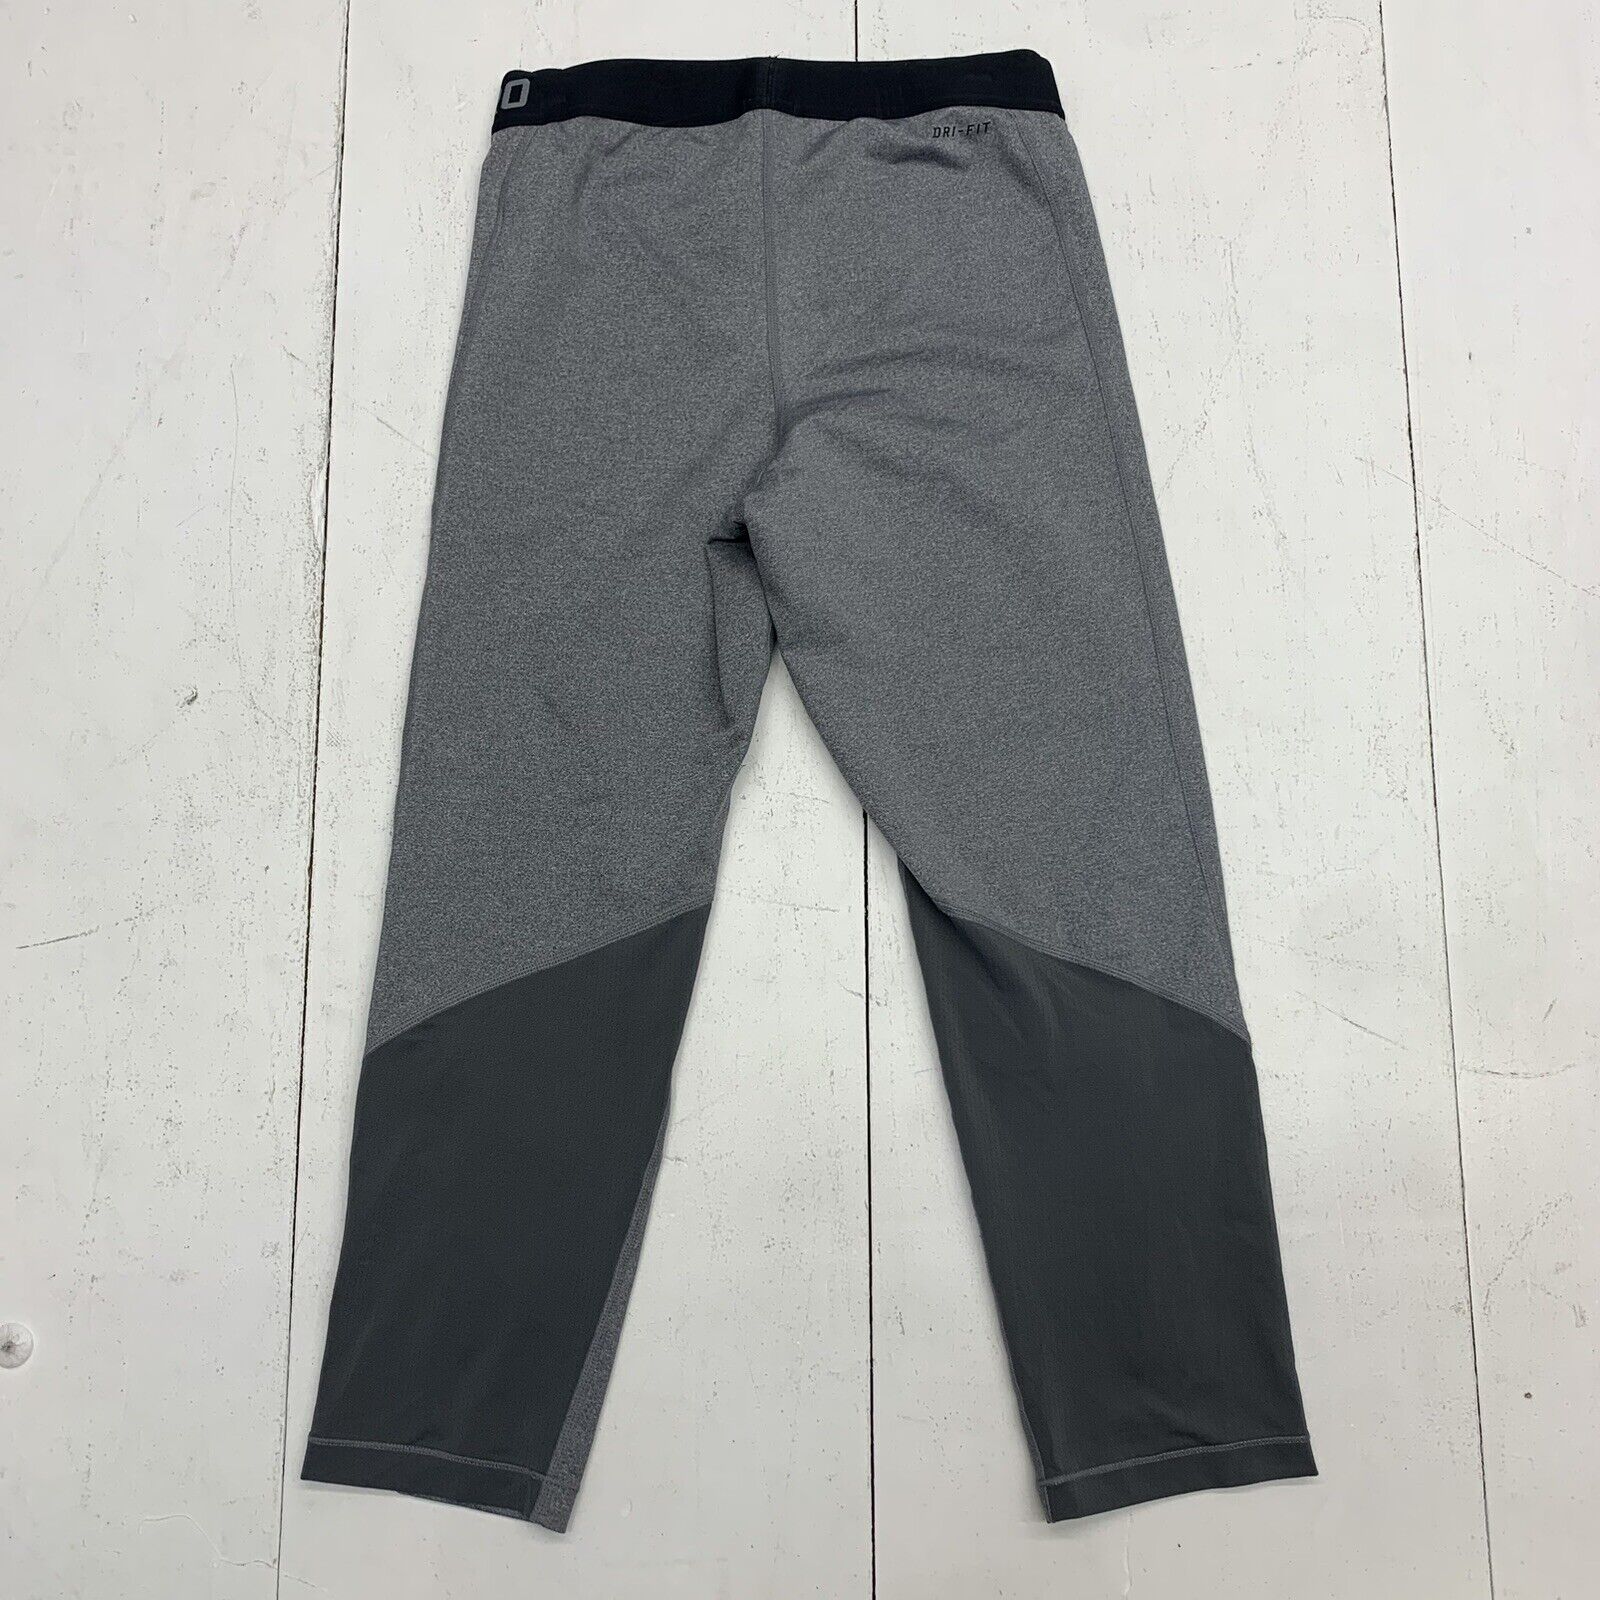 Nike pro womens grey capri leggings size Medium - beyond exchange